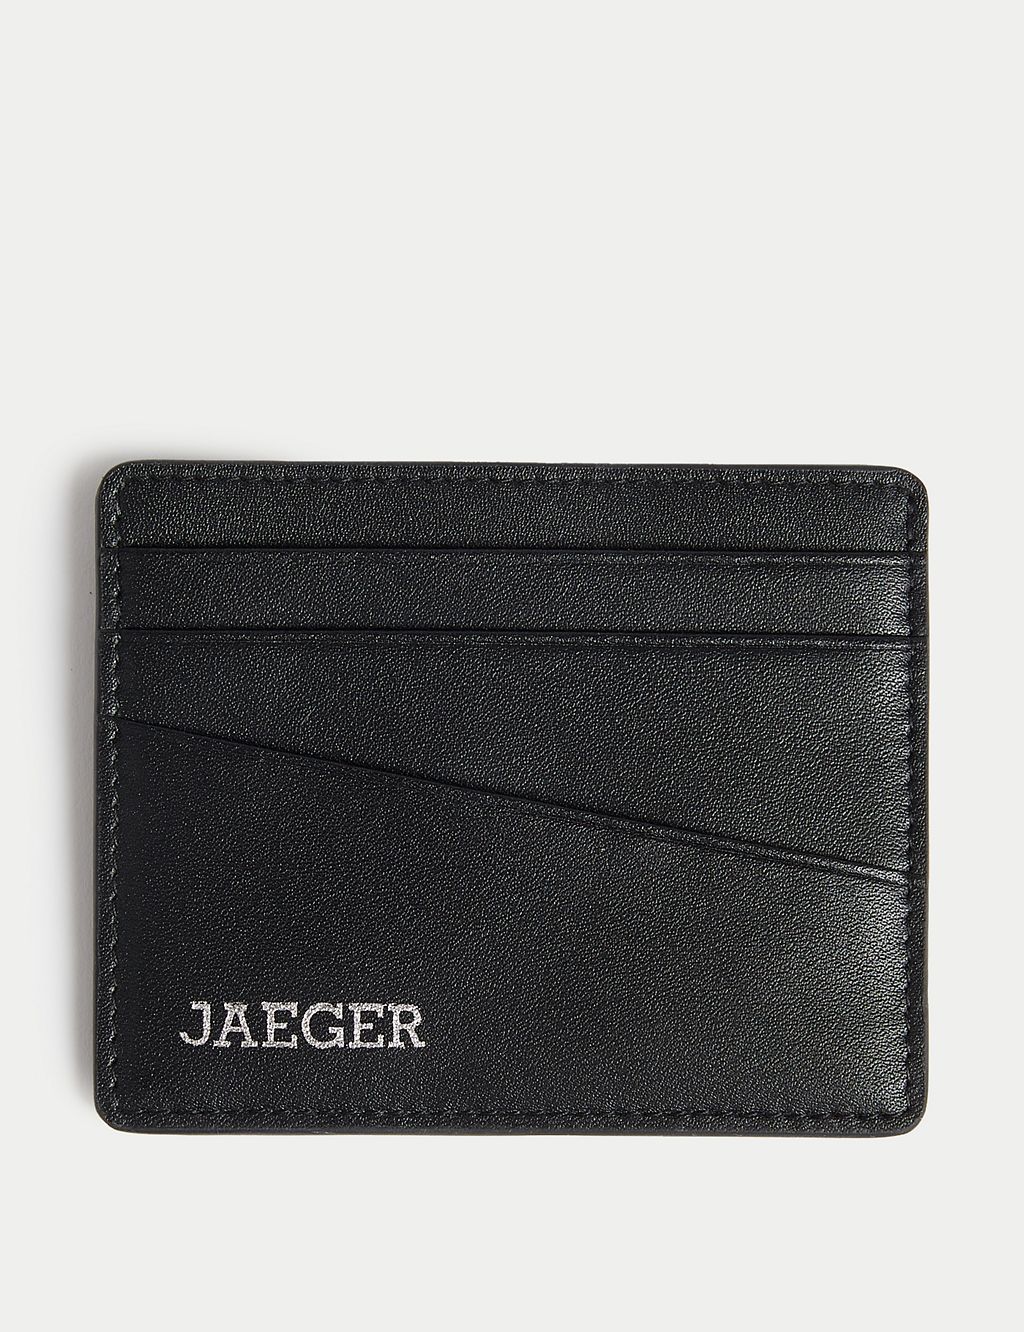 Leather Cardsafe™ Card Holder 3 of 3